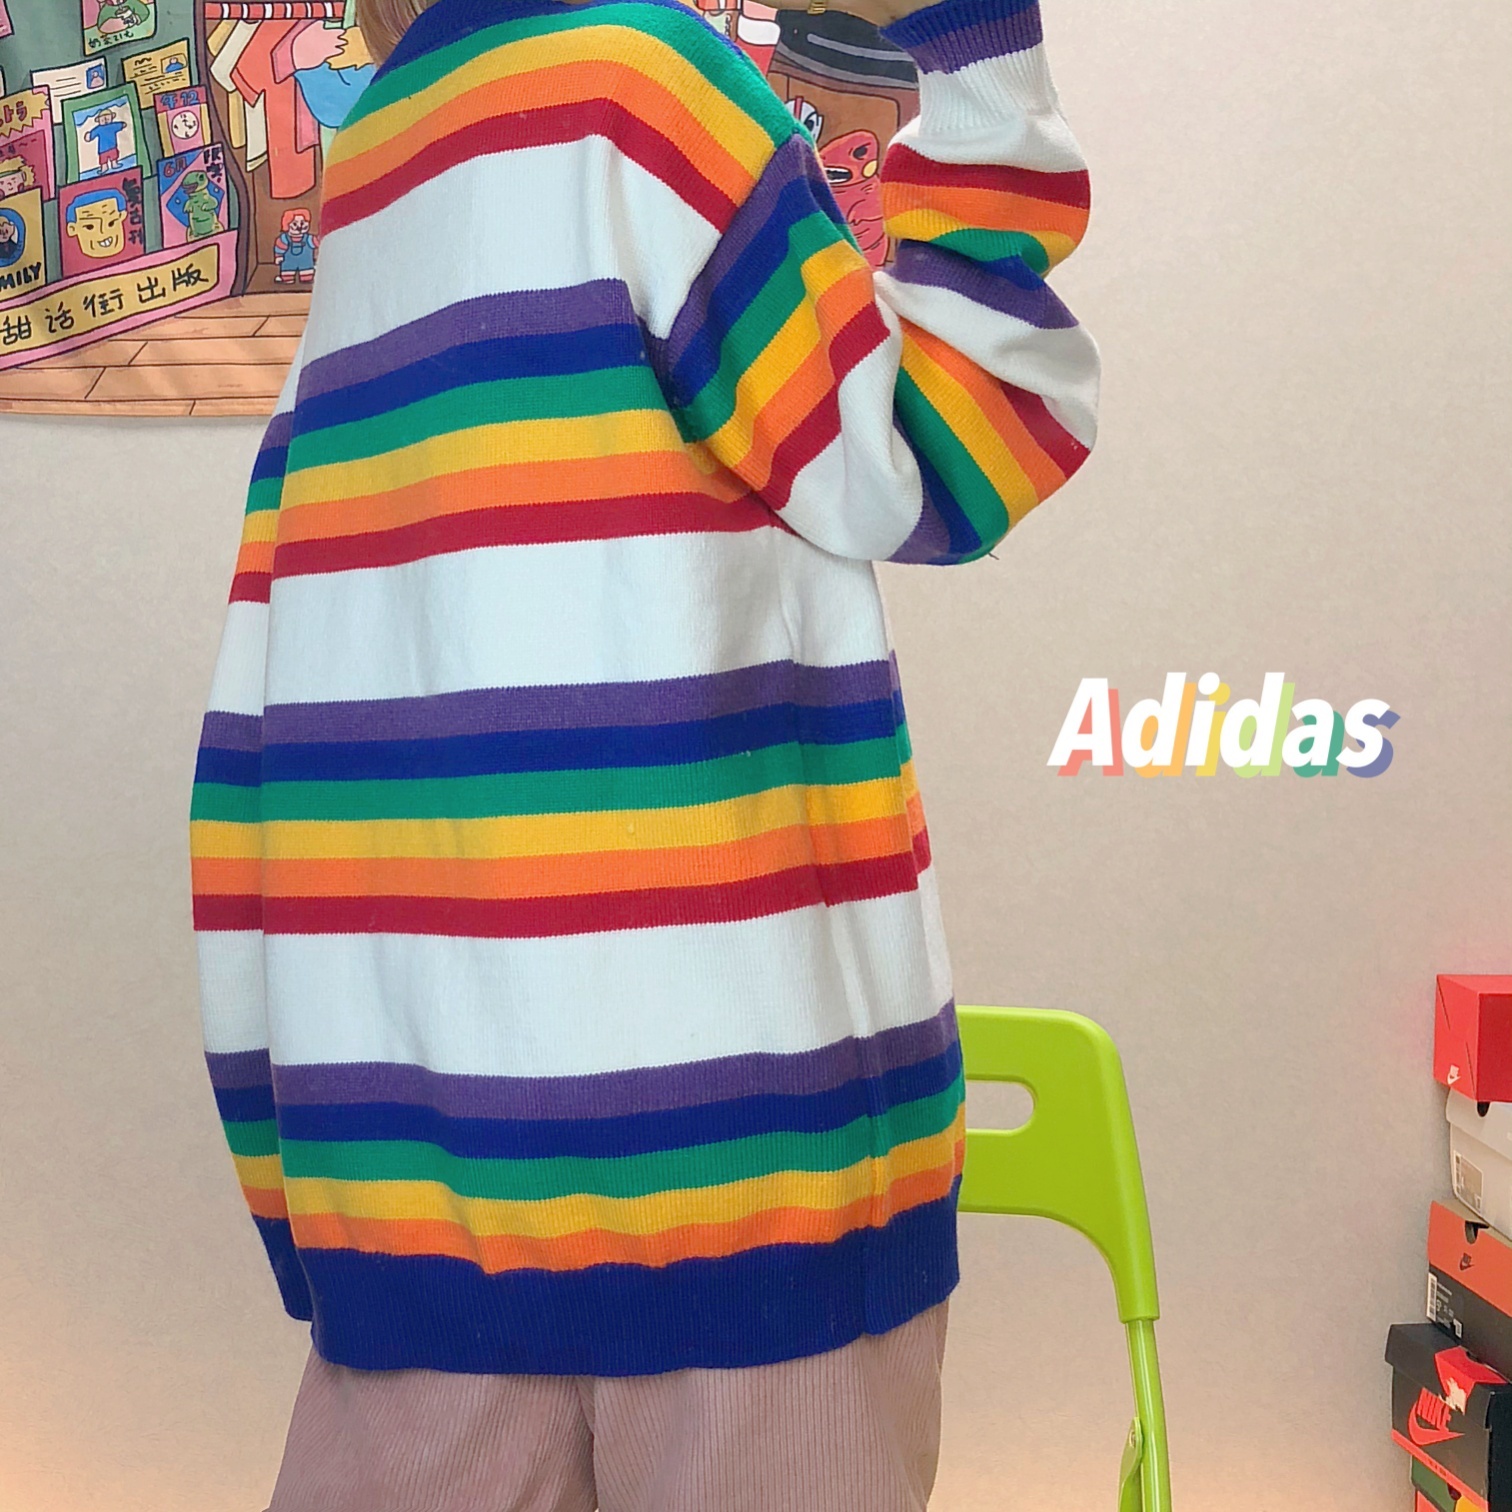 图7_adidas阿迪达斯